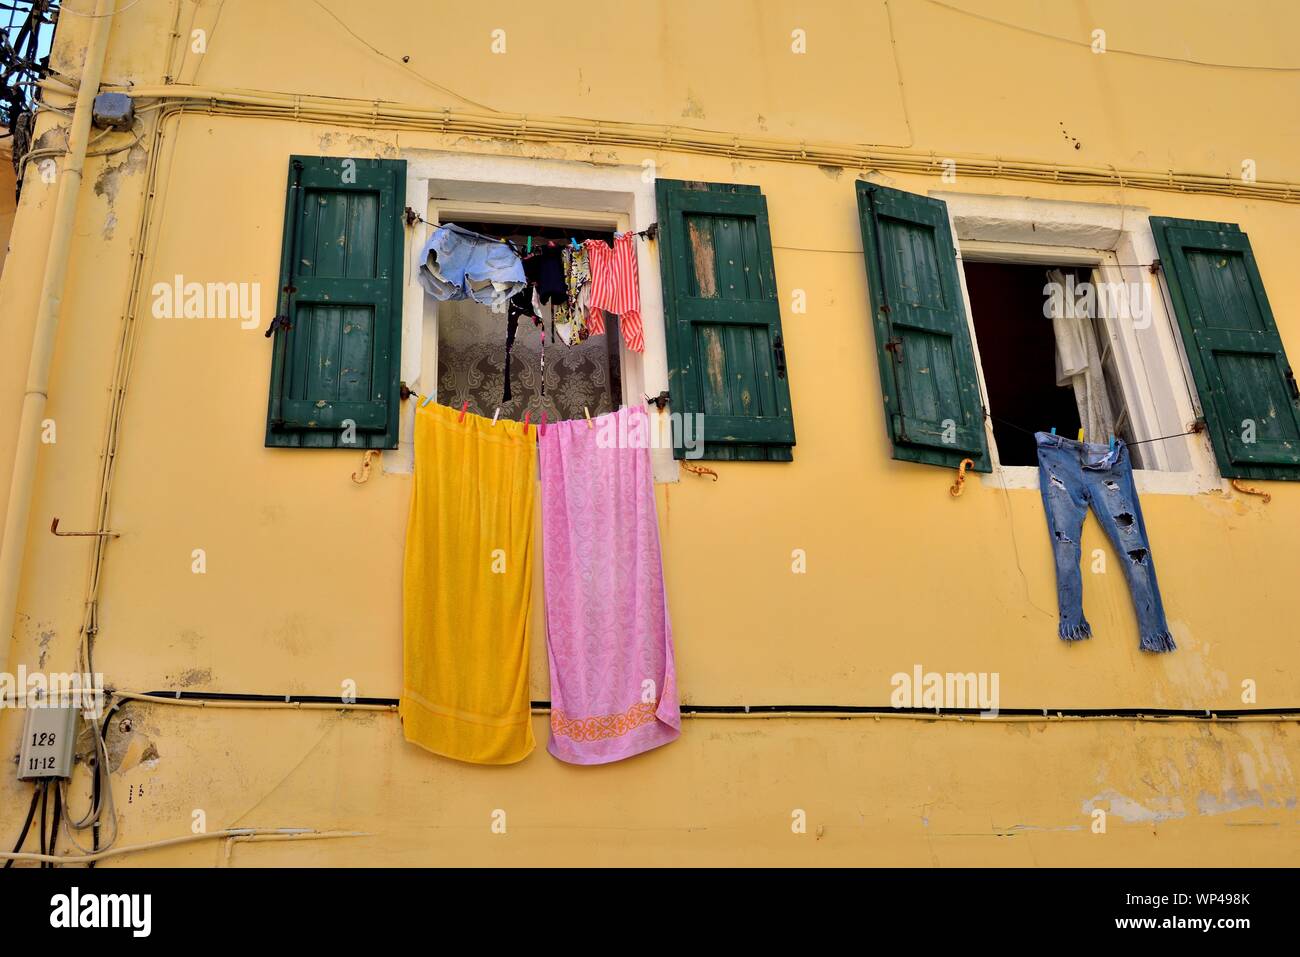 Panni stesi fuori di windows,l'asciugatura,Corfu Old Town,Corfù, Grecia, ISOLE IONIE Foto Stock